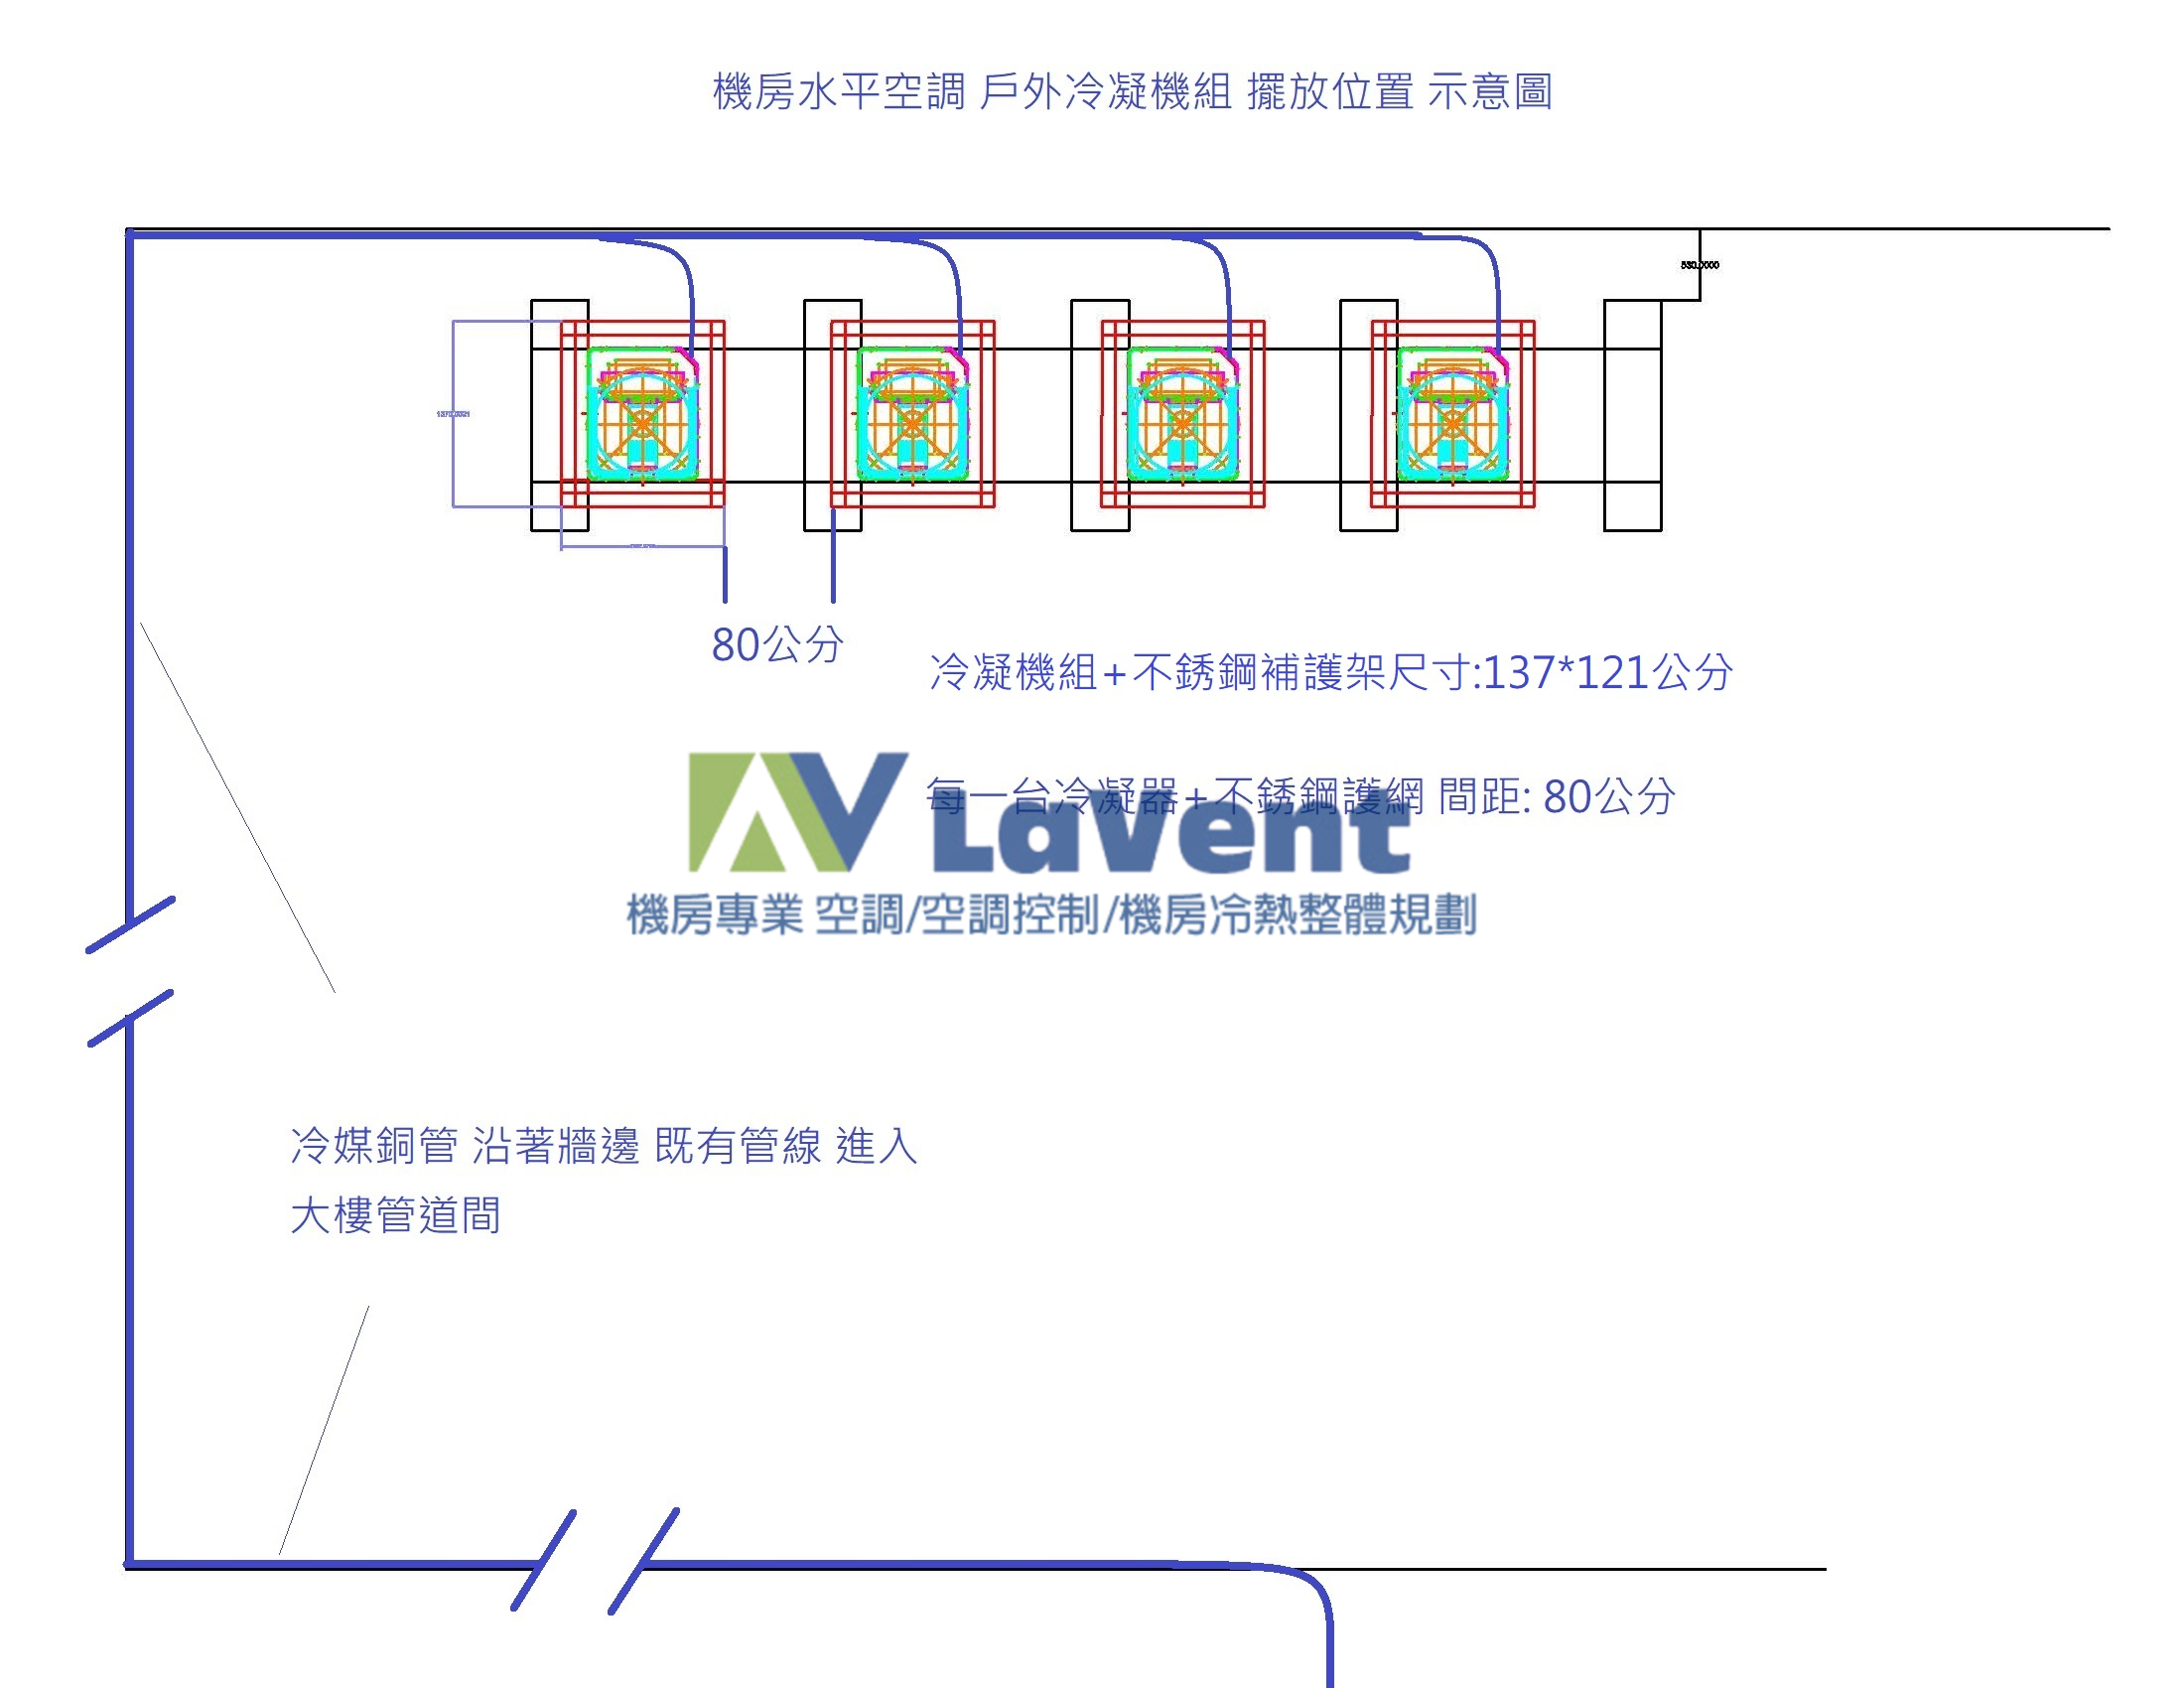 LaVent 聯方冷熱技研 機房冷氣建置 機房空調規劃 機房簡易控制 機房冷氣輪動盤 機房建置 氣冷精密水平空調 智慧型機房空調控制系統 機房冷熱通道規劃